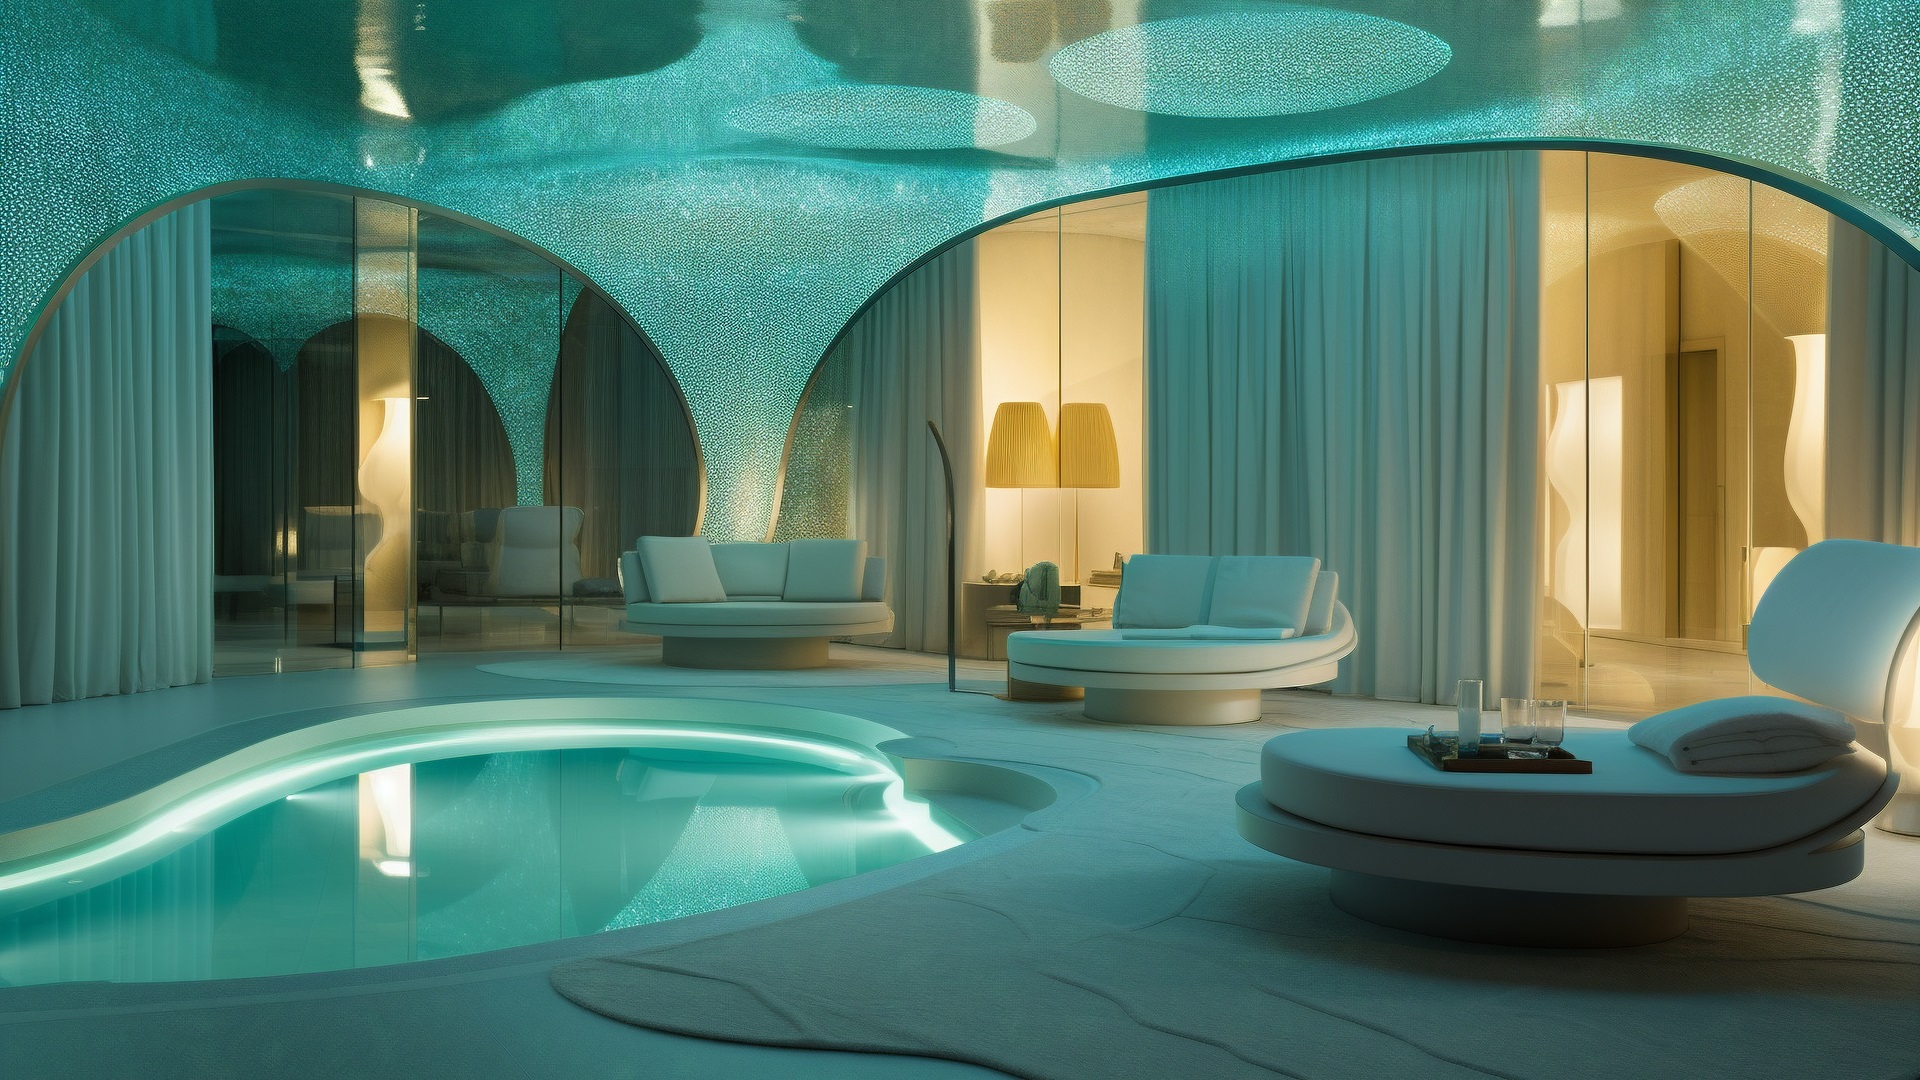 Aquatic interior design of a resort hotel